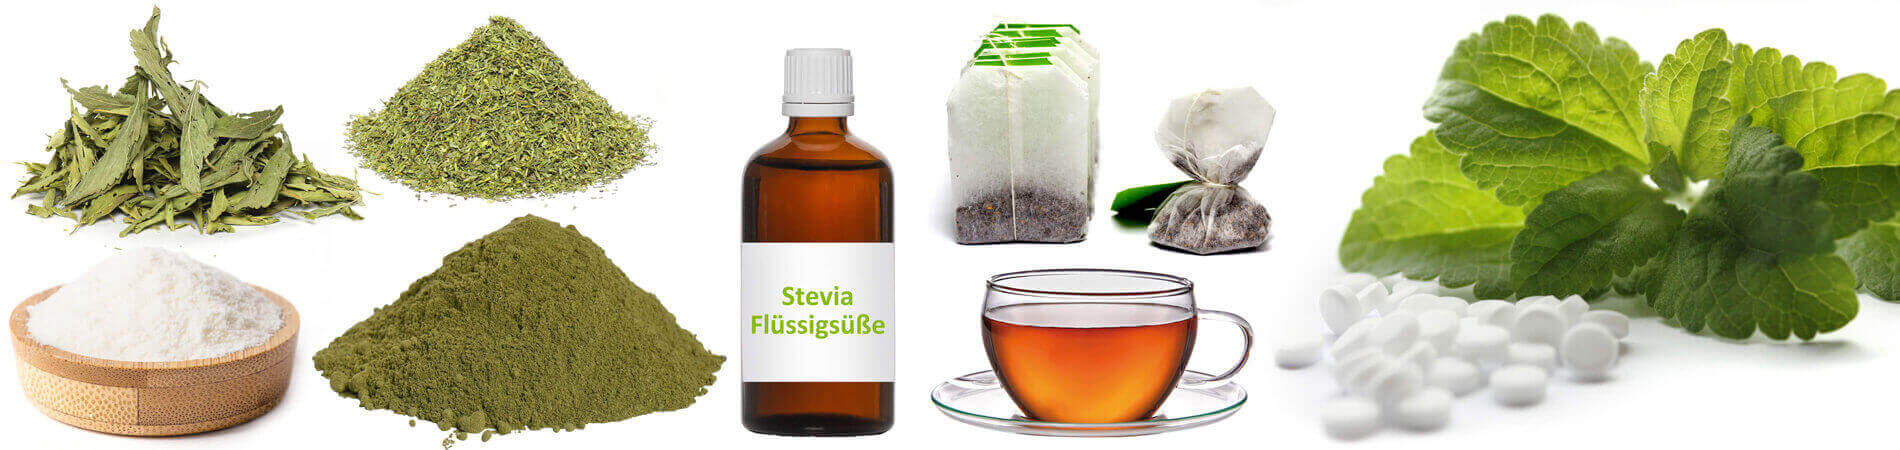 Stevia als Süßungsmittel - Alles über den Zucker-Ersatz 